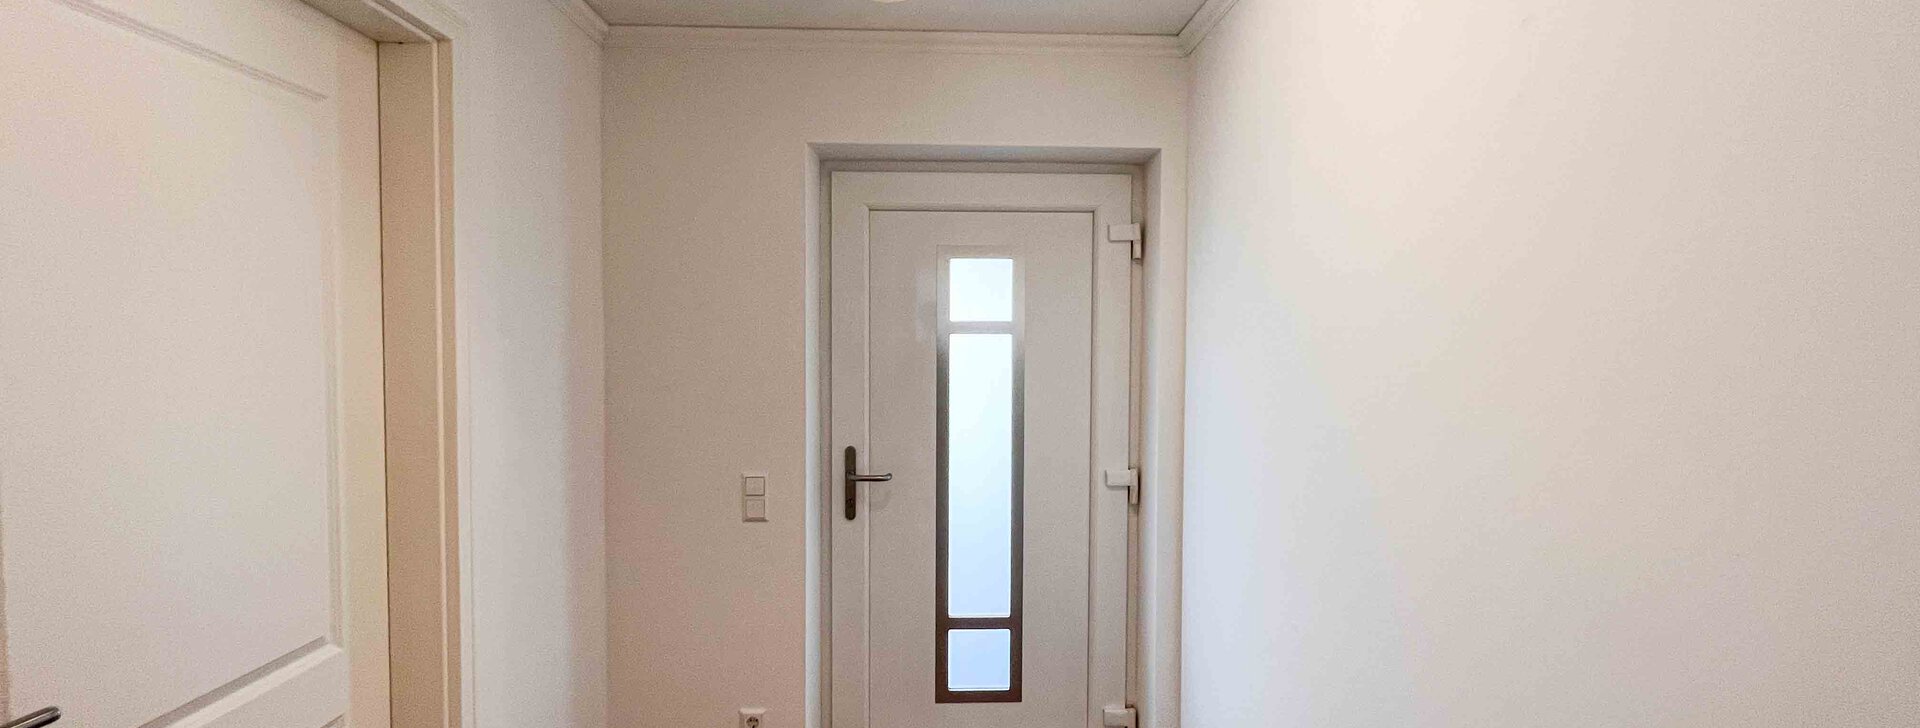 Eingangsbereich-Immobilie verkaufen-Miete-Reihenmittelhaus Traunstein | © HausBauHaus GmbH